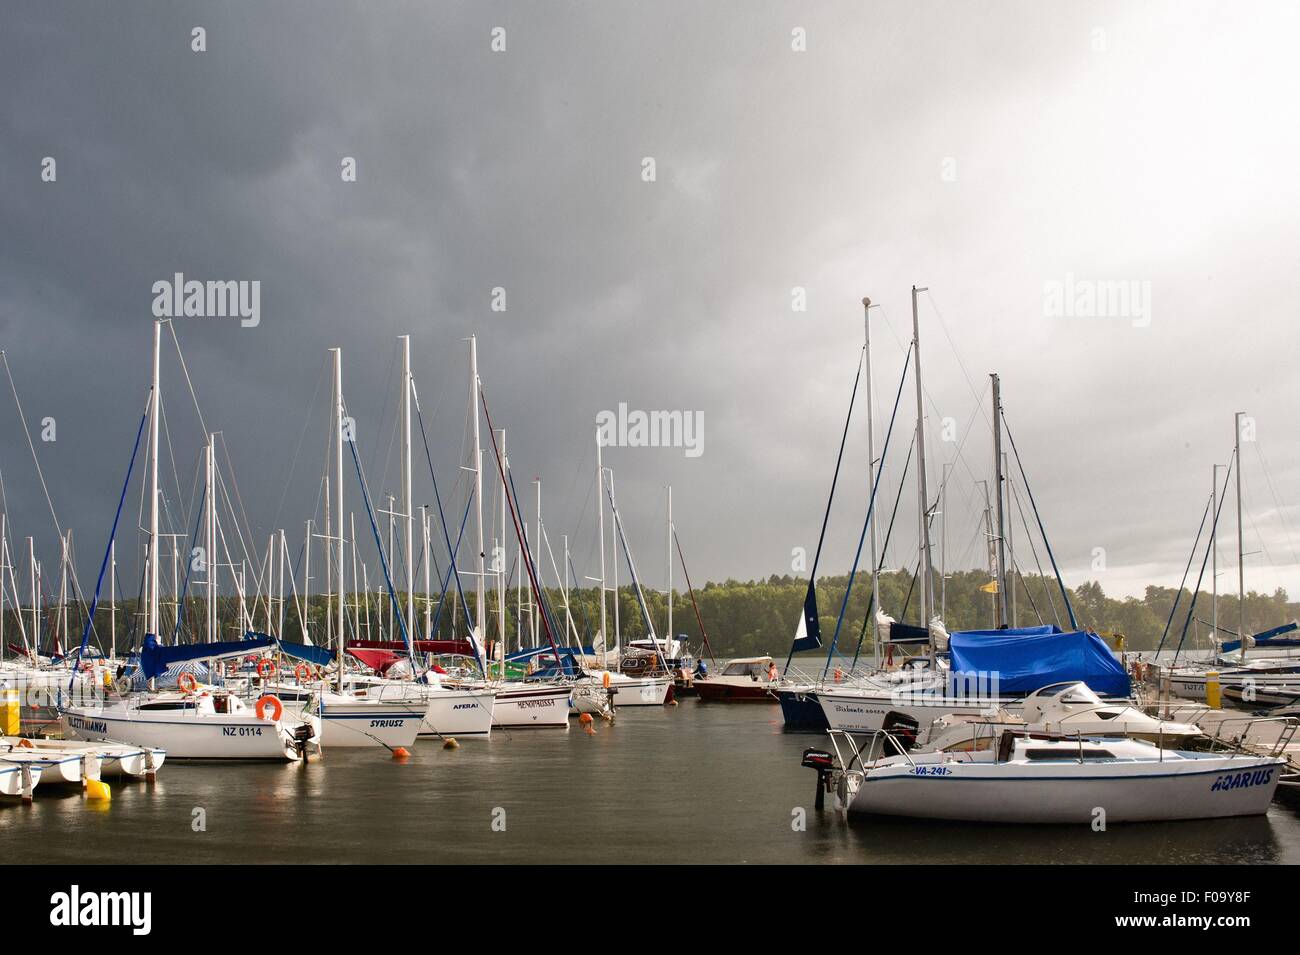 Boats moored at marina in Mikolajki, Warmia-Masuria, Poland Stock Photo